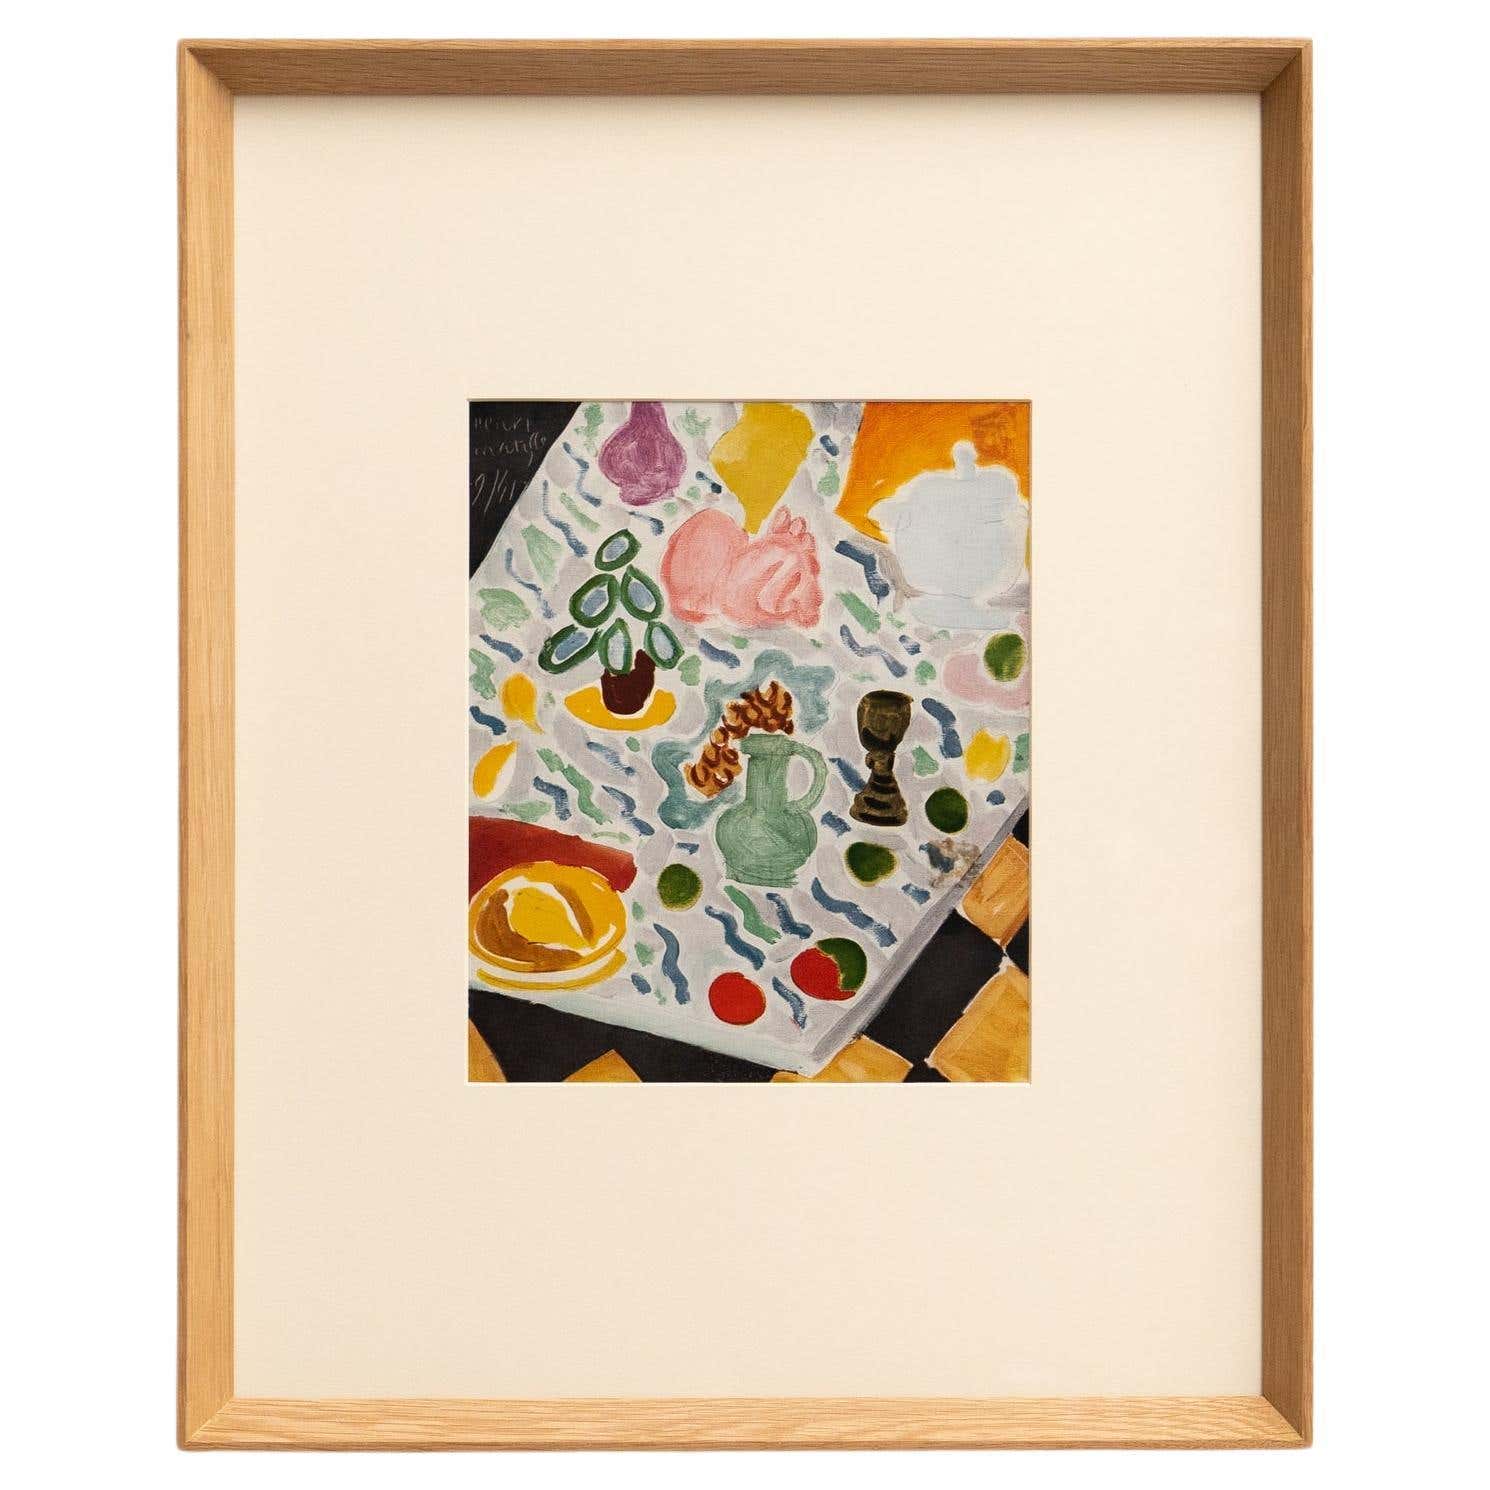 Rara litografía en color: Un vistazo a la maestría artística de Matisse